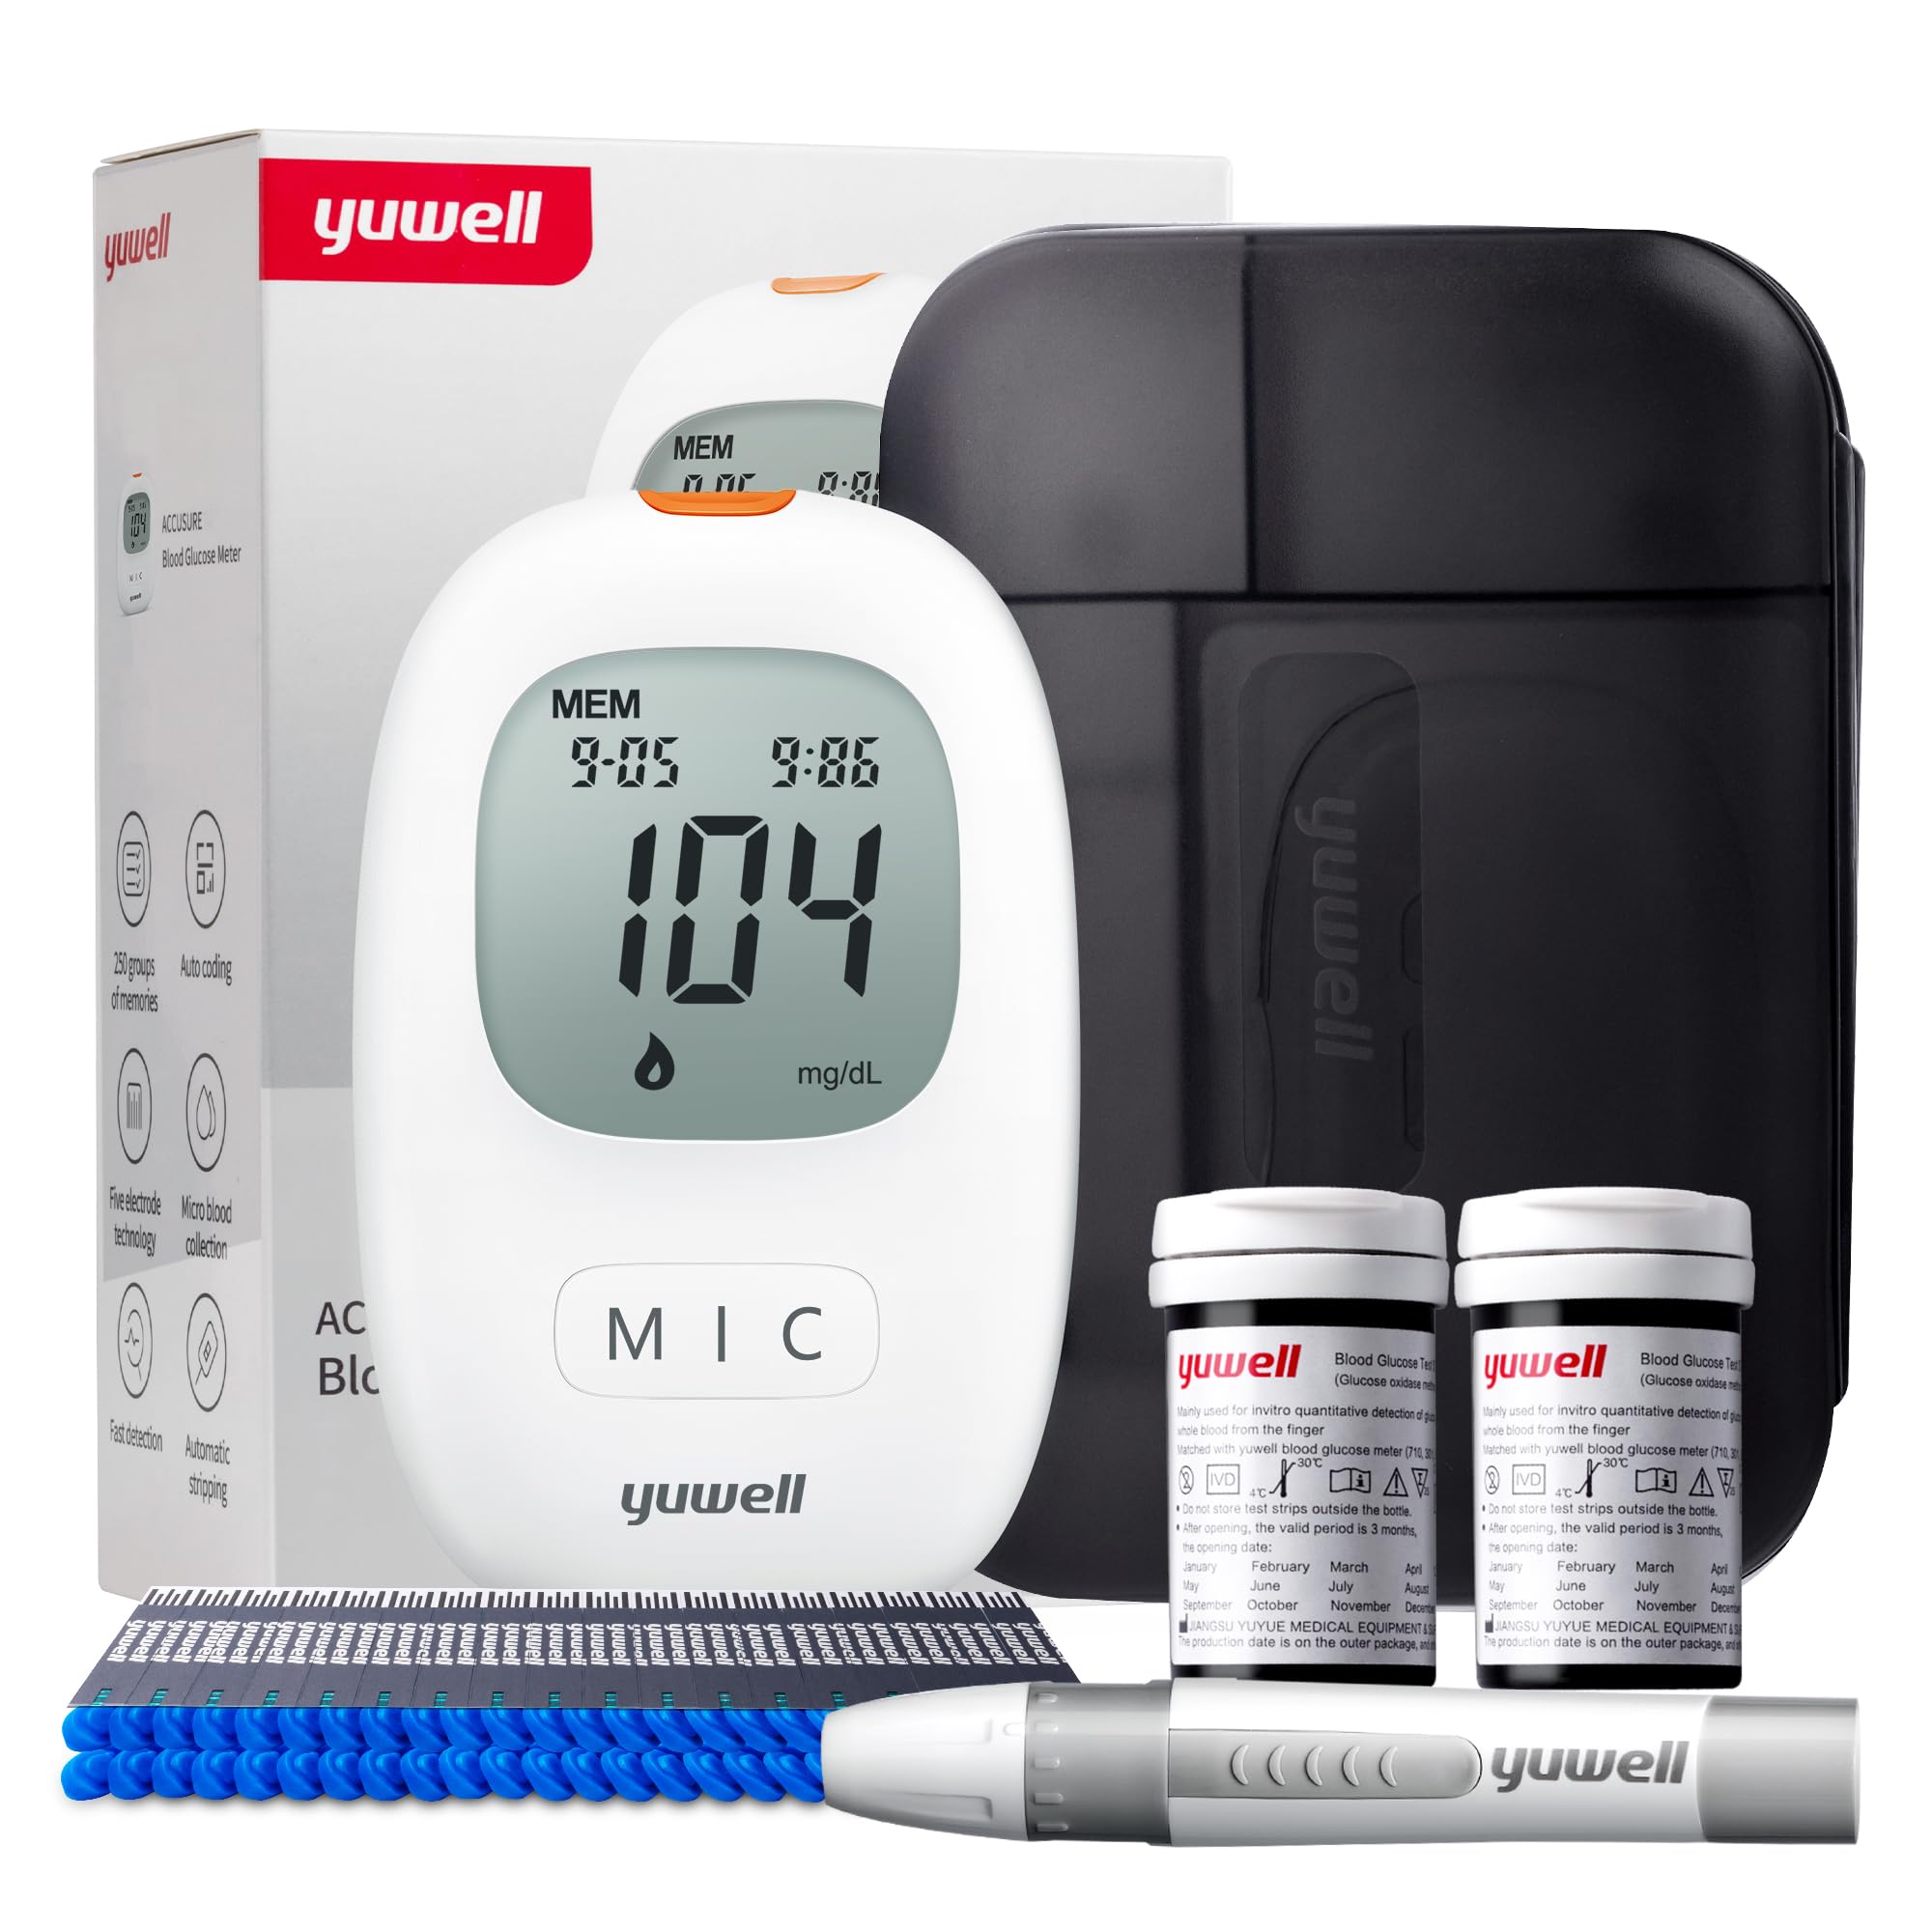 yuwell Blutzuckermessgerät Set mit Teststreifen x 50 und Lanzetten x 50, Diabetes Test ideal für den Heimgebrauch, Zuckermessgerät zur Selbstkontrolle des Blutzuckers bei Diabetes (Modell 710)